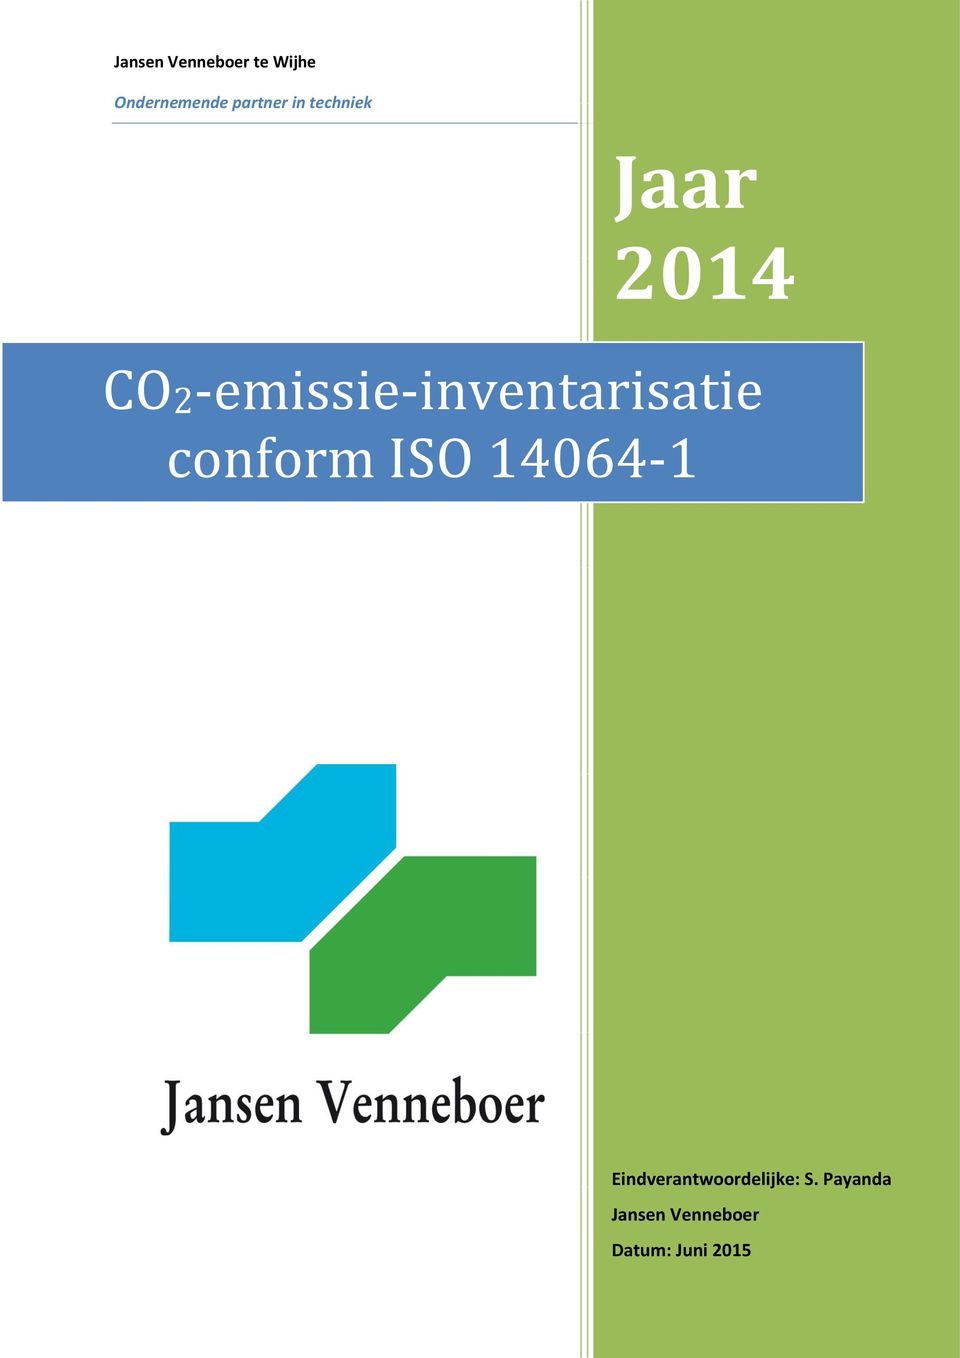 CO2-emissie-inventarisatie conform ISO